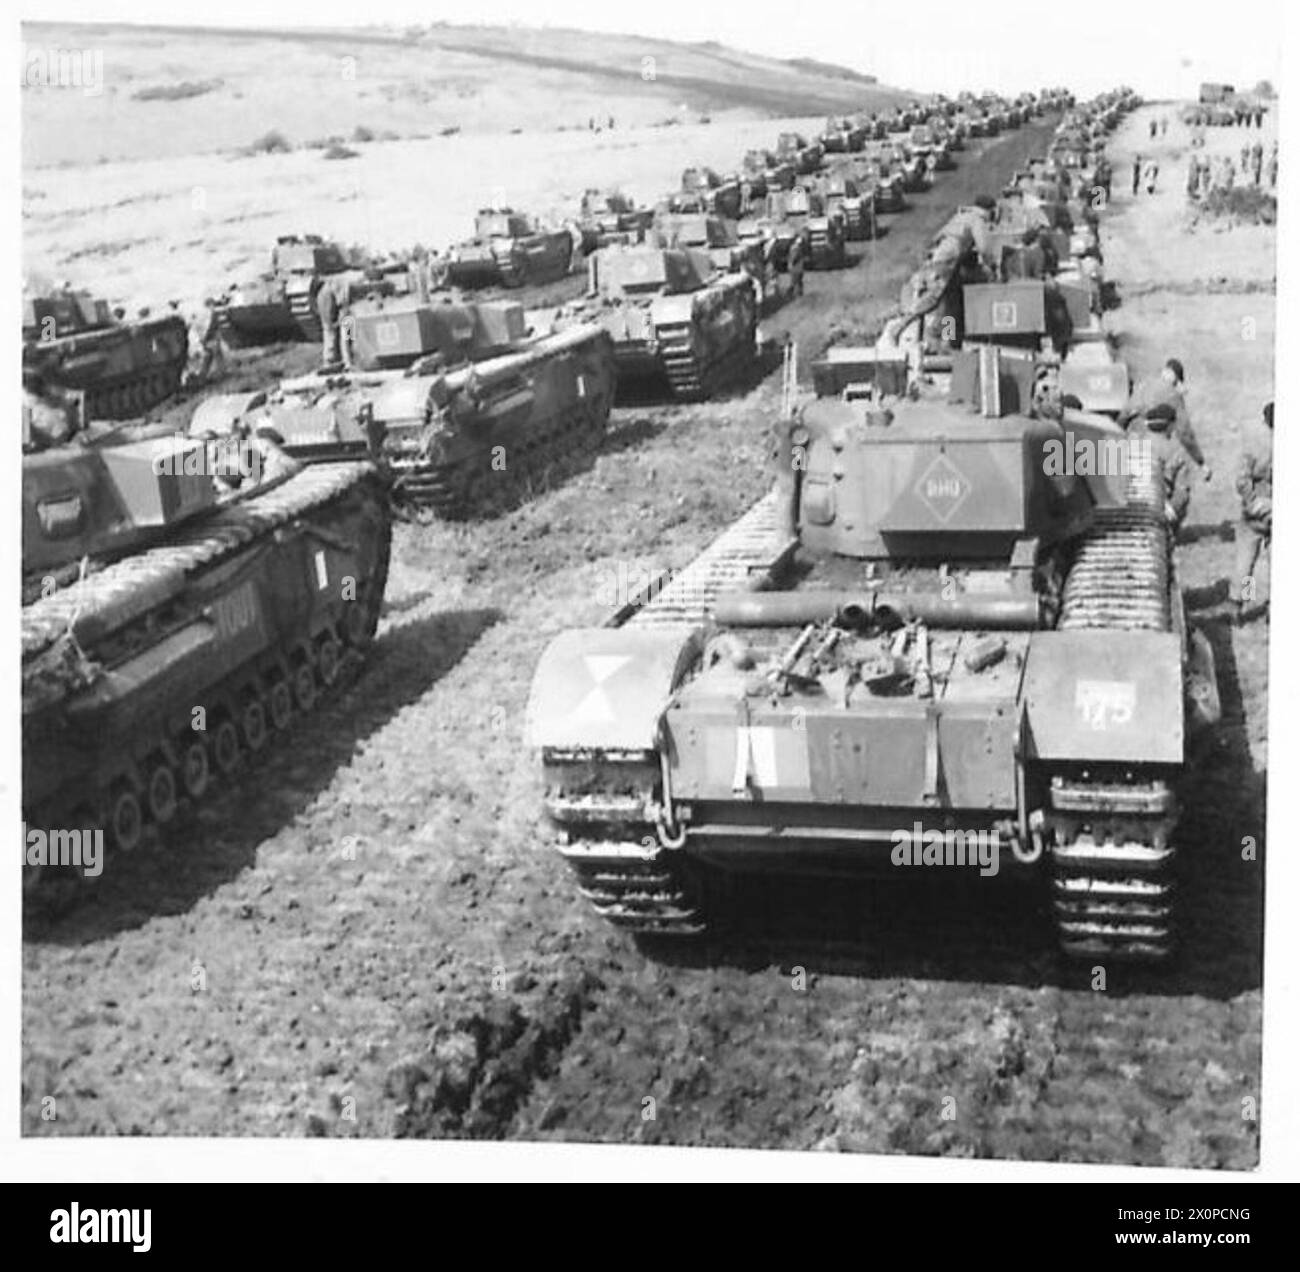 IL PRIMO MINISTRO VISITA IL COMANDO S.E. - 'Churchill' Mk. IV carri armati di fanteria in sfilata sulle South Downs. Negativo fotografico, British Army Foto Stock